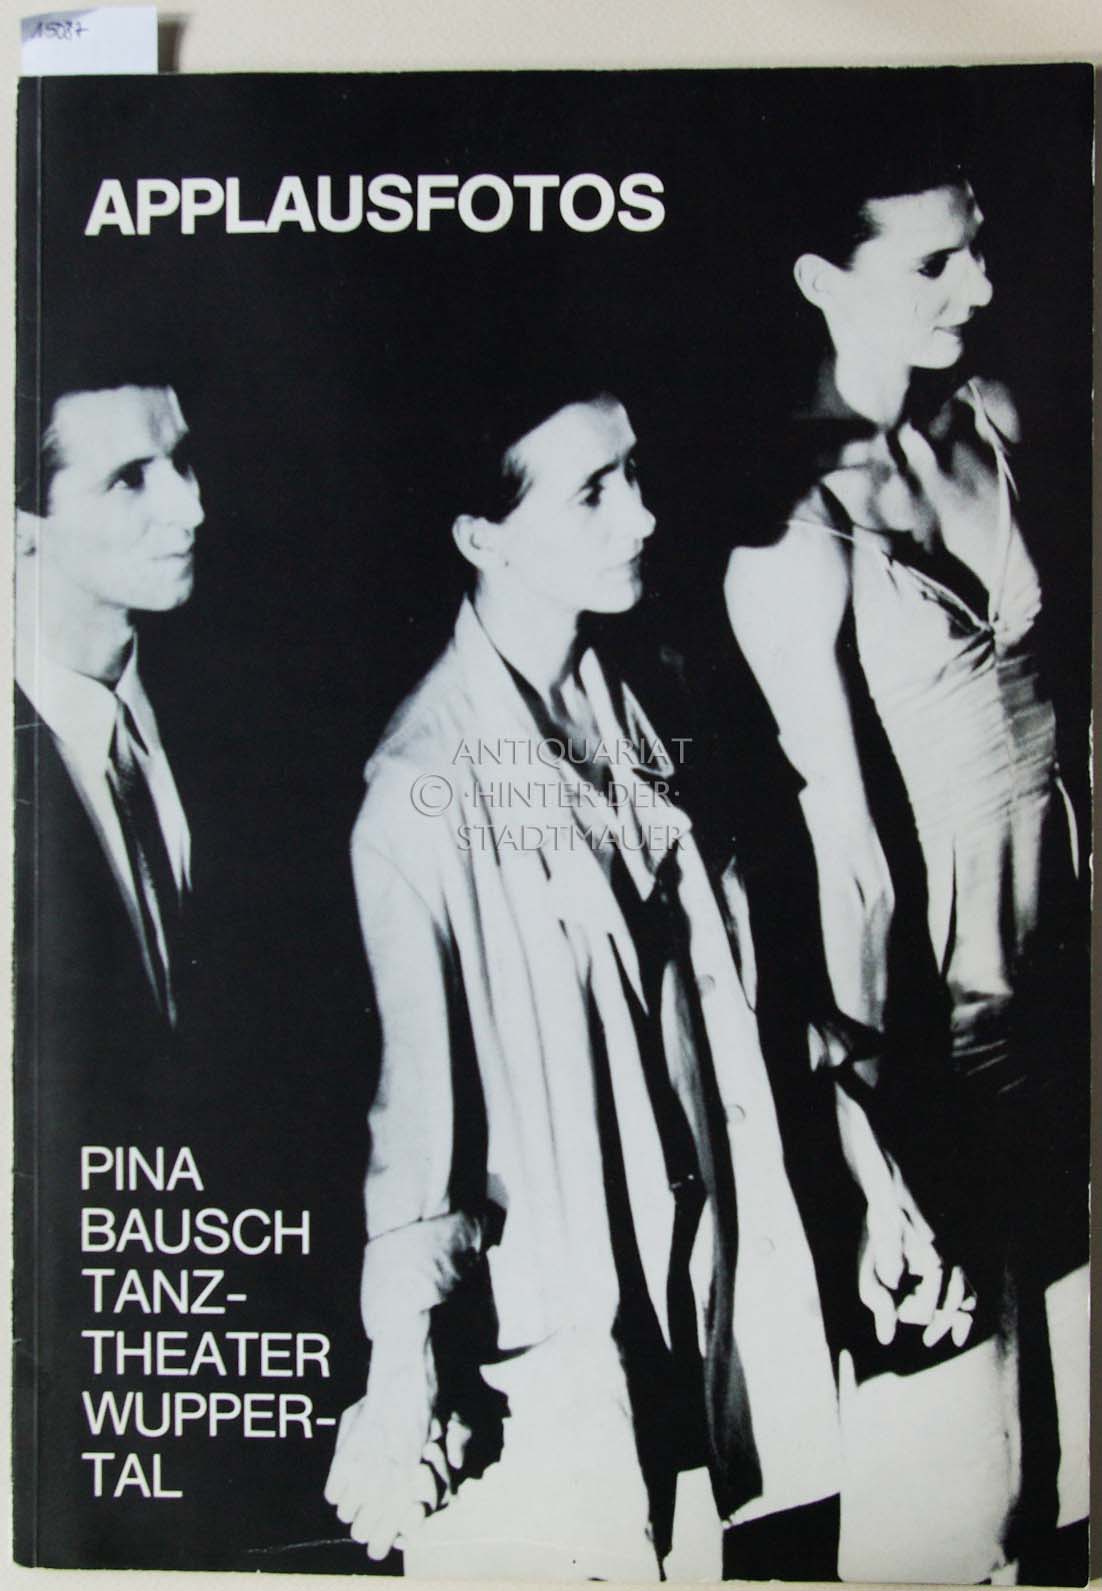 Applausfotos. Pina Bausch Tanztheater Wuppertal. - Weiss, Ulli und Raimund Hoghe